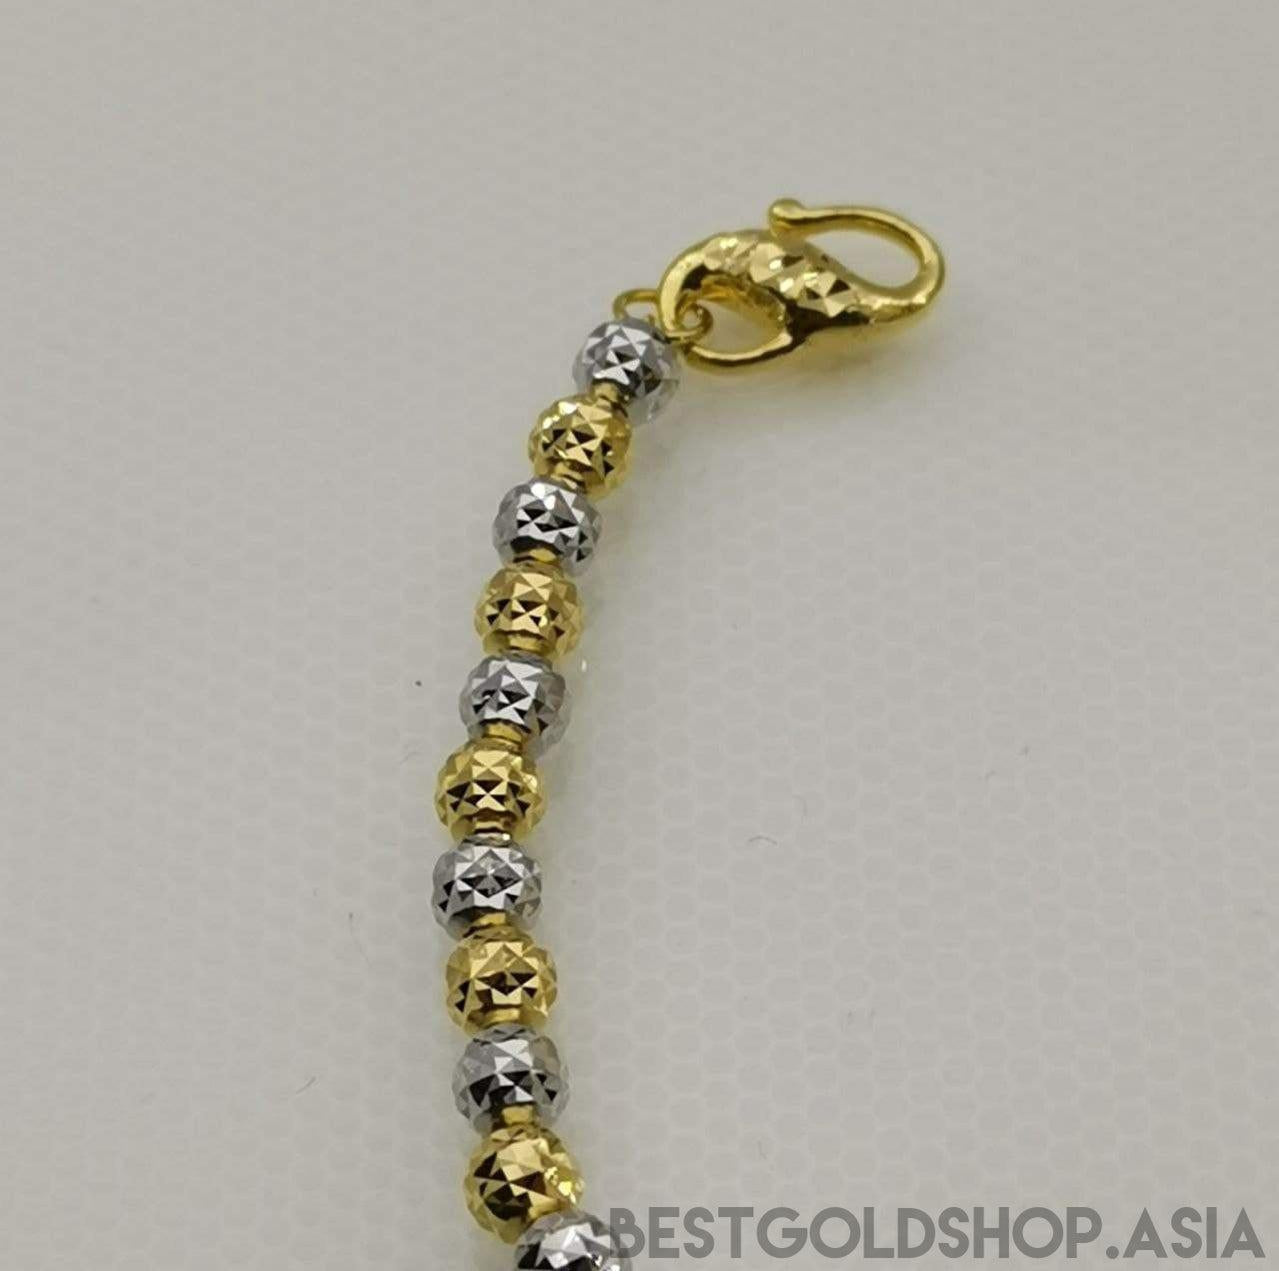 22K / 916 Cutting Ball Gold Bracelet 2C-916 gold-Best Gold Shop